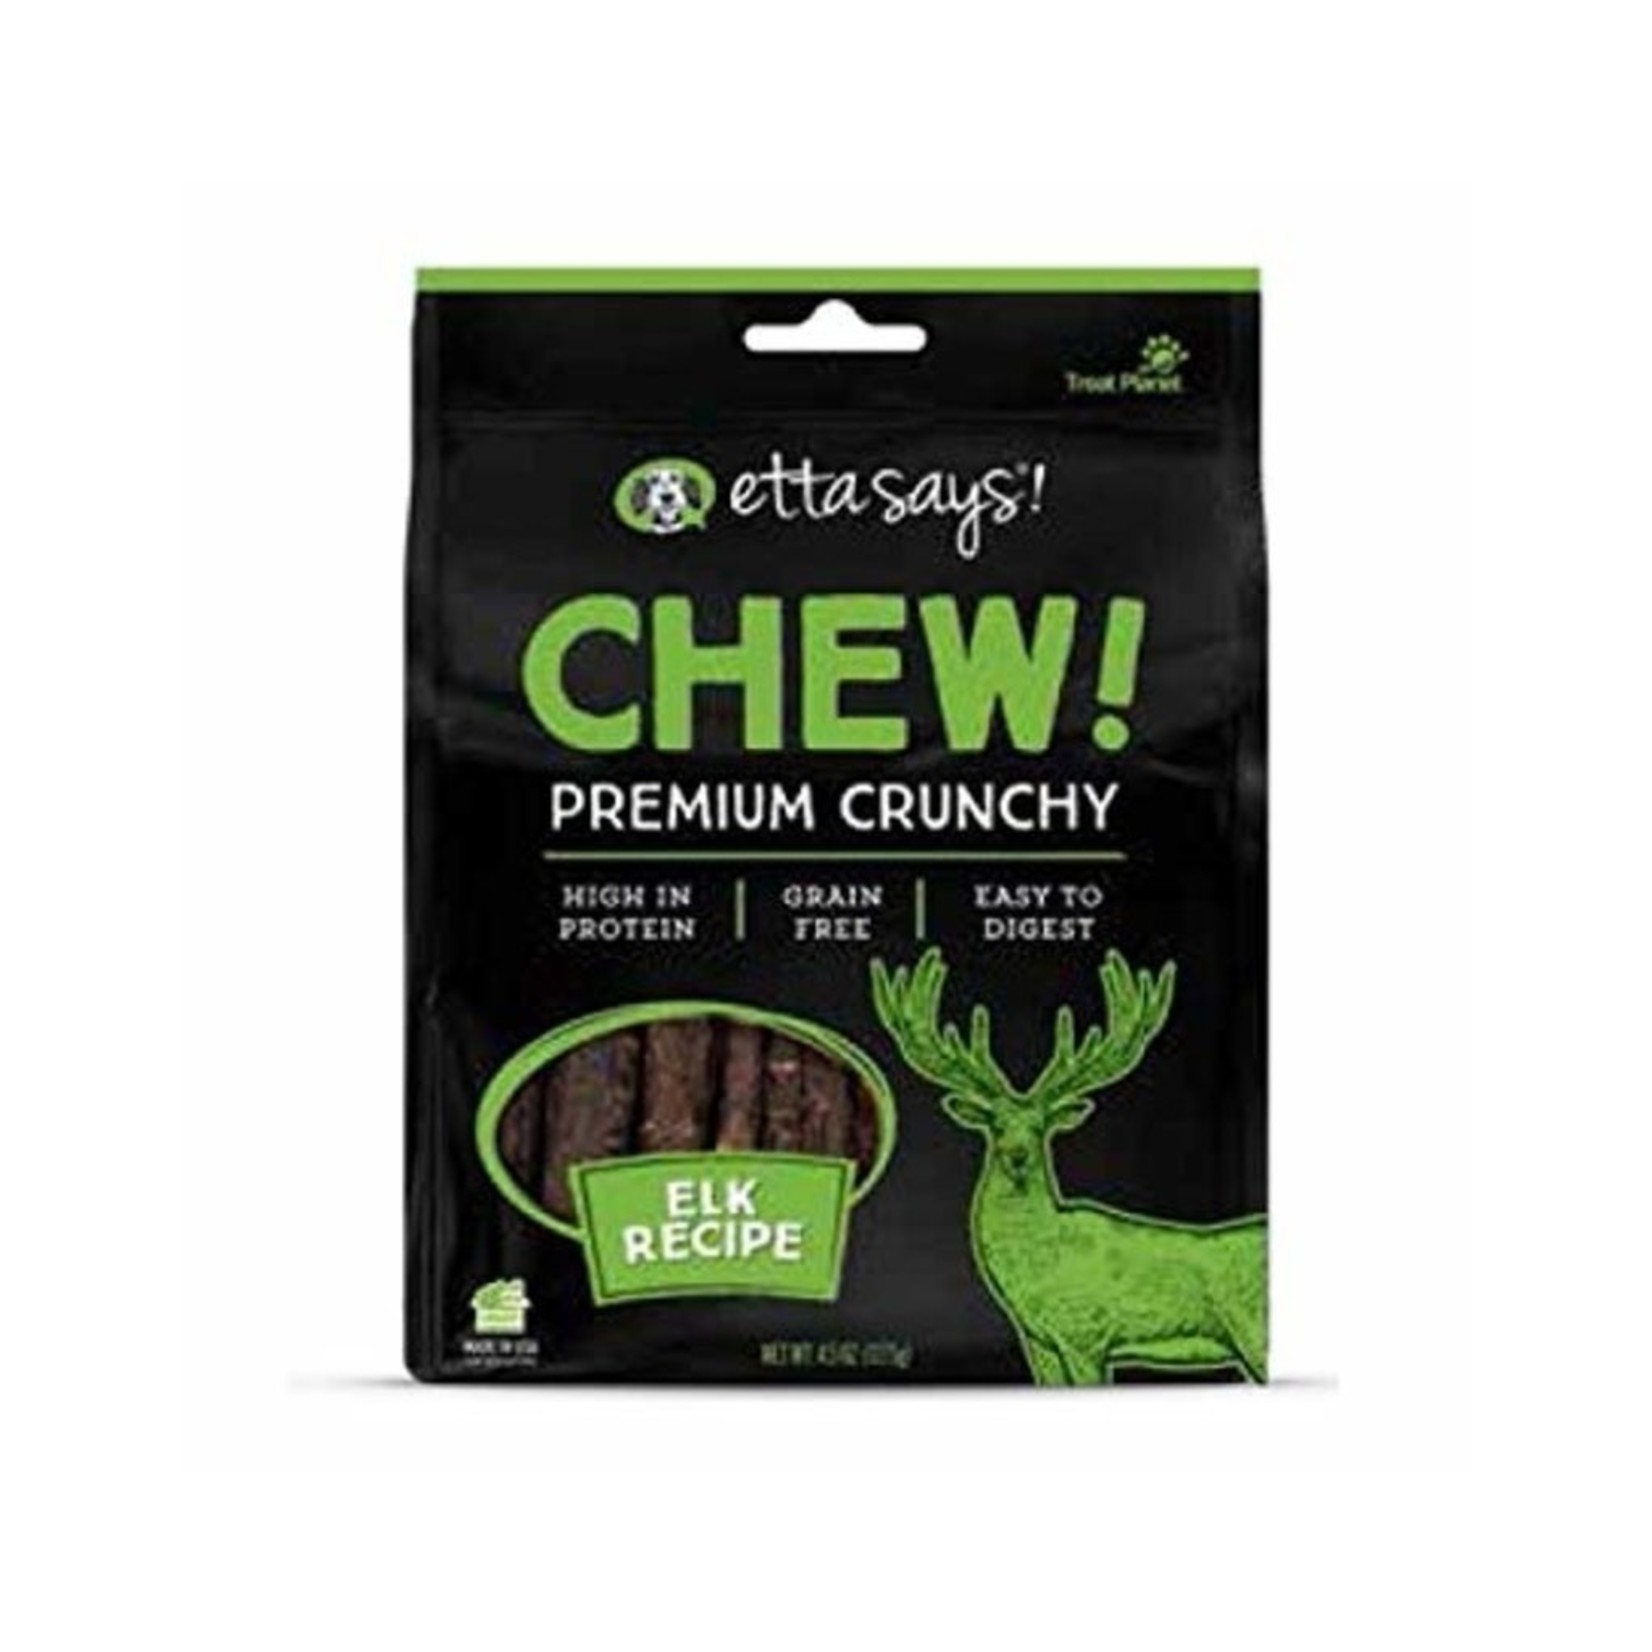 Treat Planet Etta Says Chew Crunchy Elk Recipe Dog Chews 4.5oz